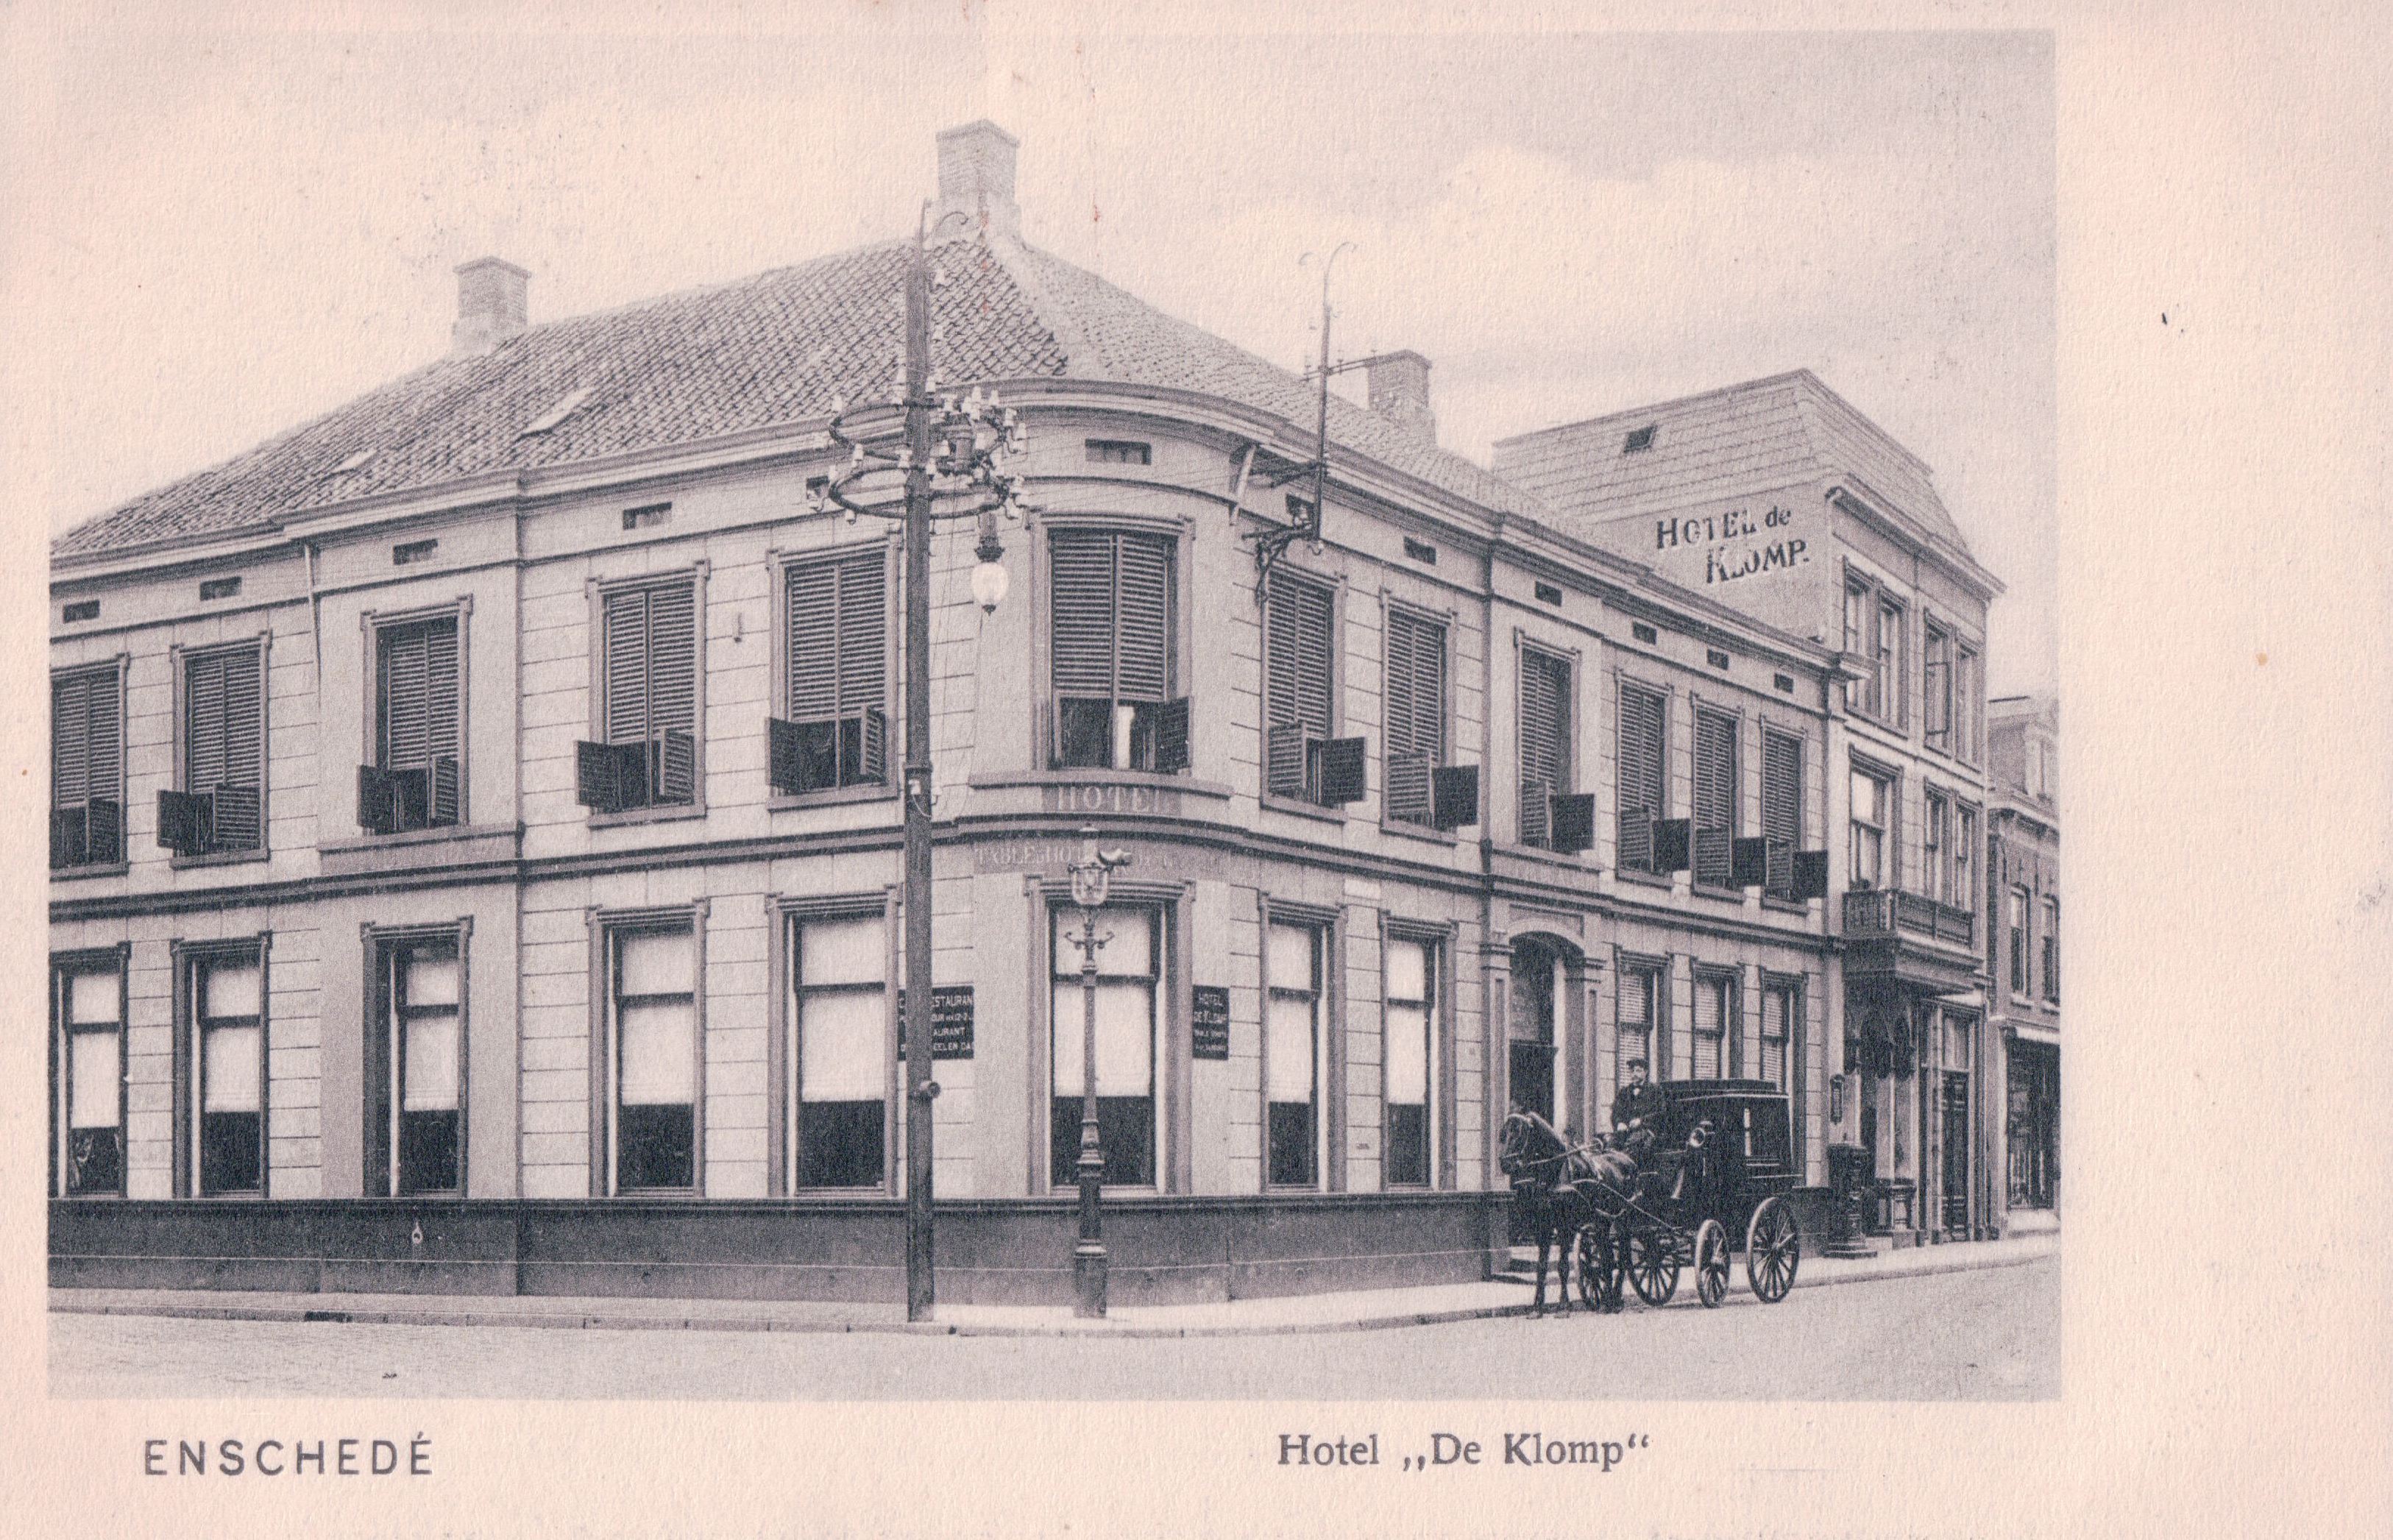 Hotel-de-klomp-1902-8c17924d.jpg